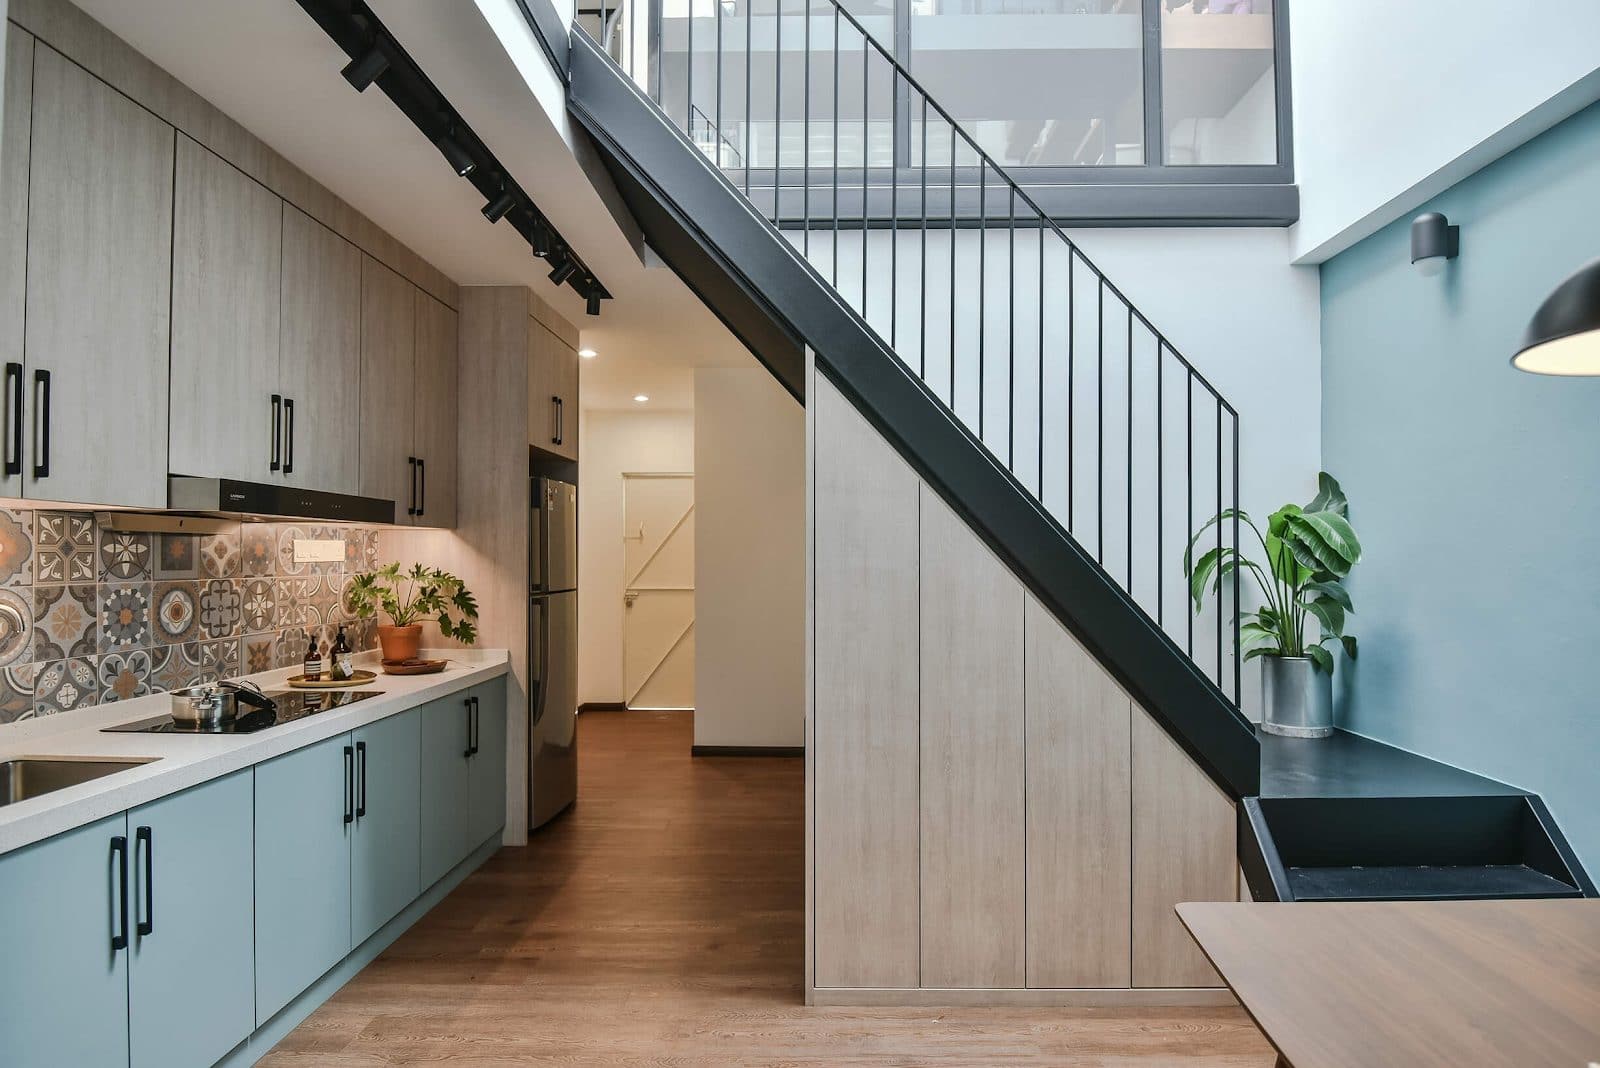 Terrace home kitchen stairway modern design 